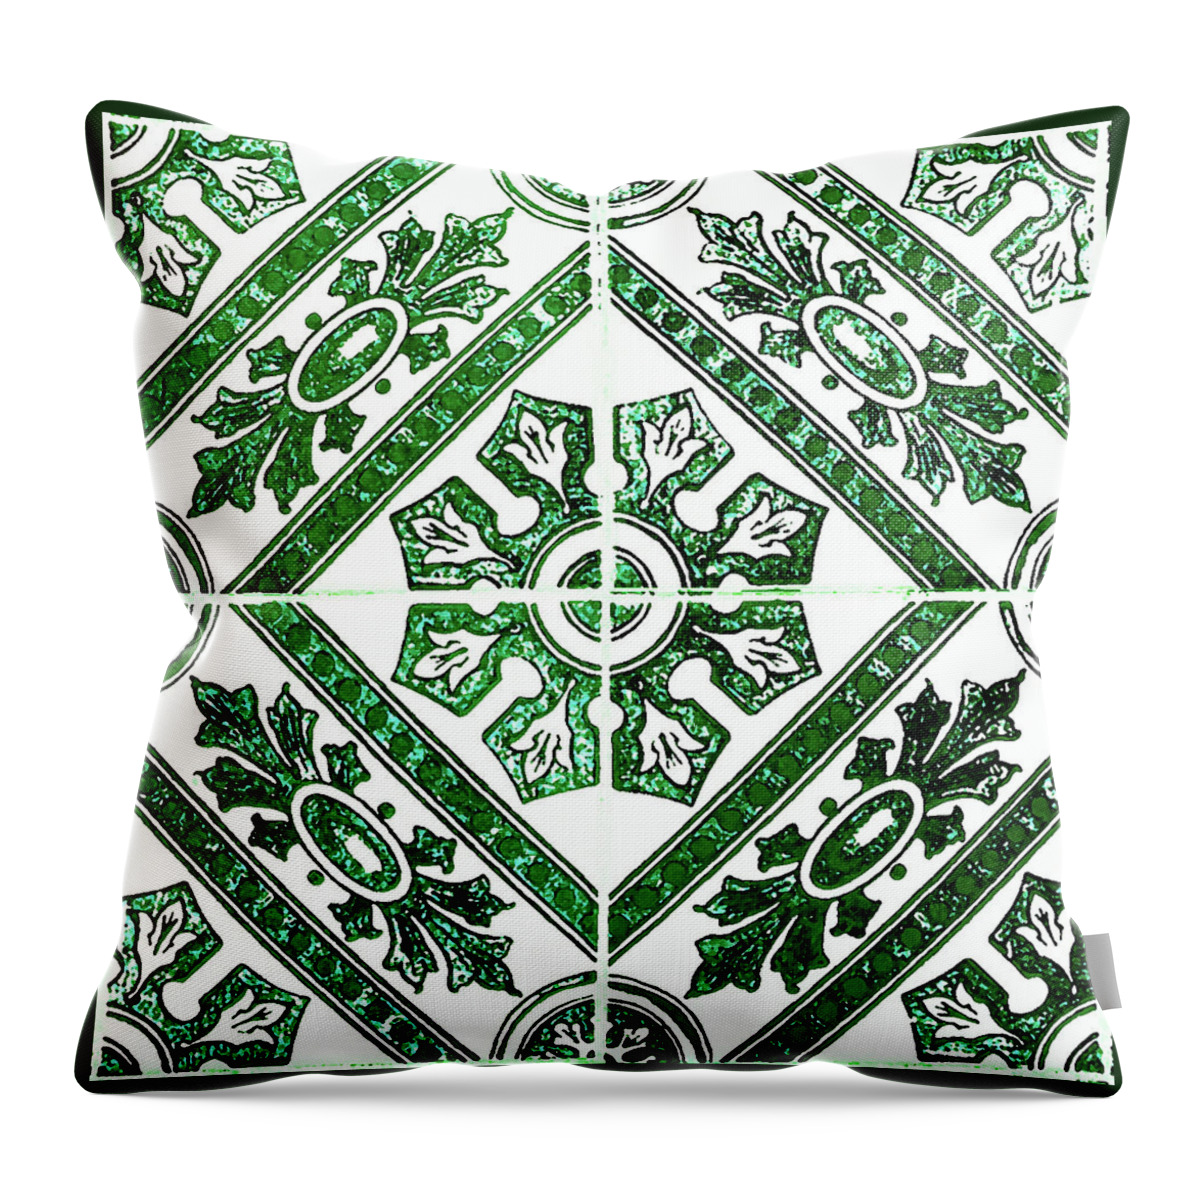 Green Tiles Throw Pillow featuring the digital art Rustic Green Tiles Mosaic Design Decorative Art by Irina Sztukowski